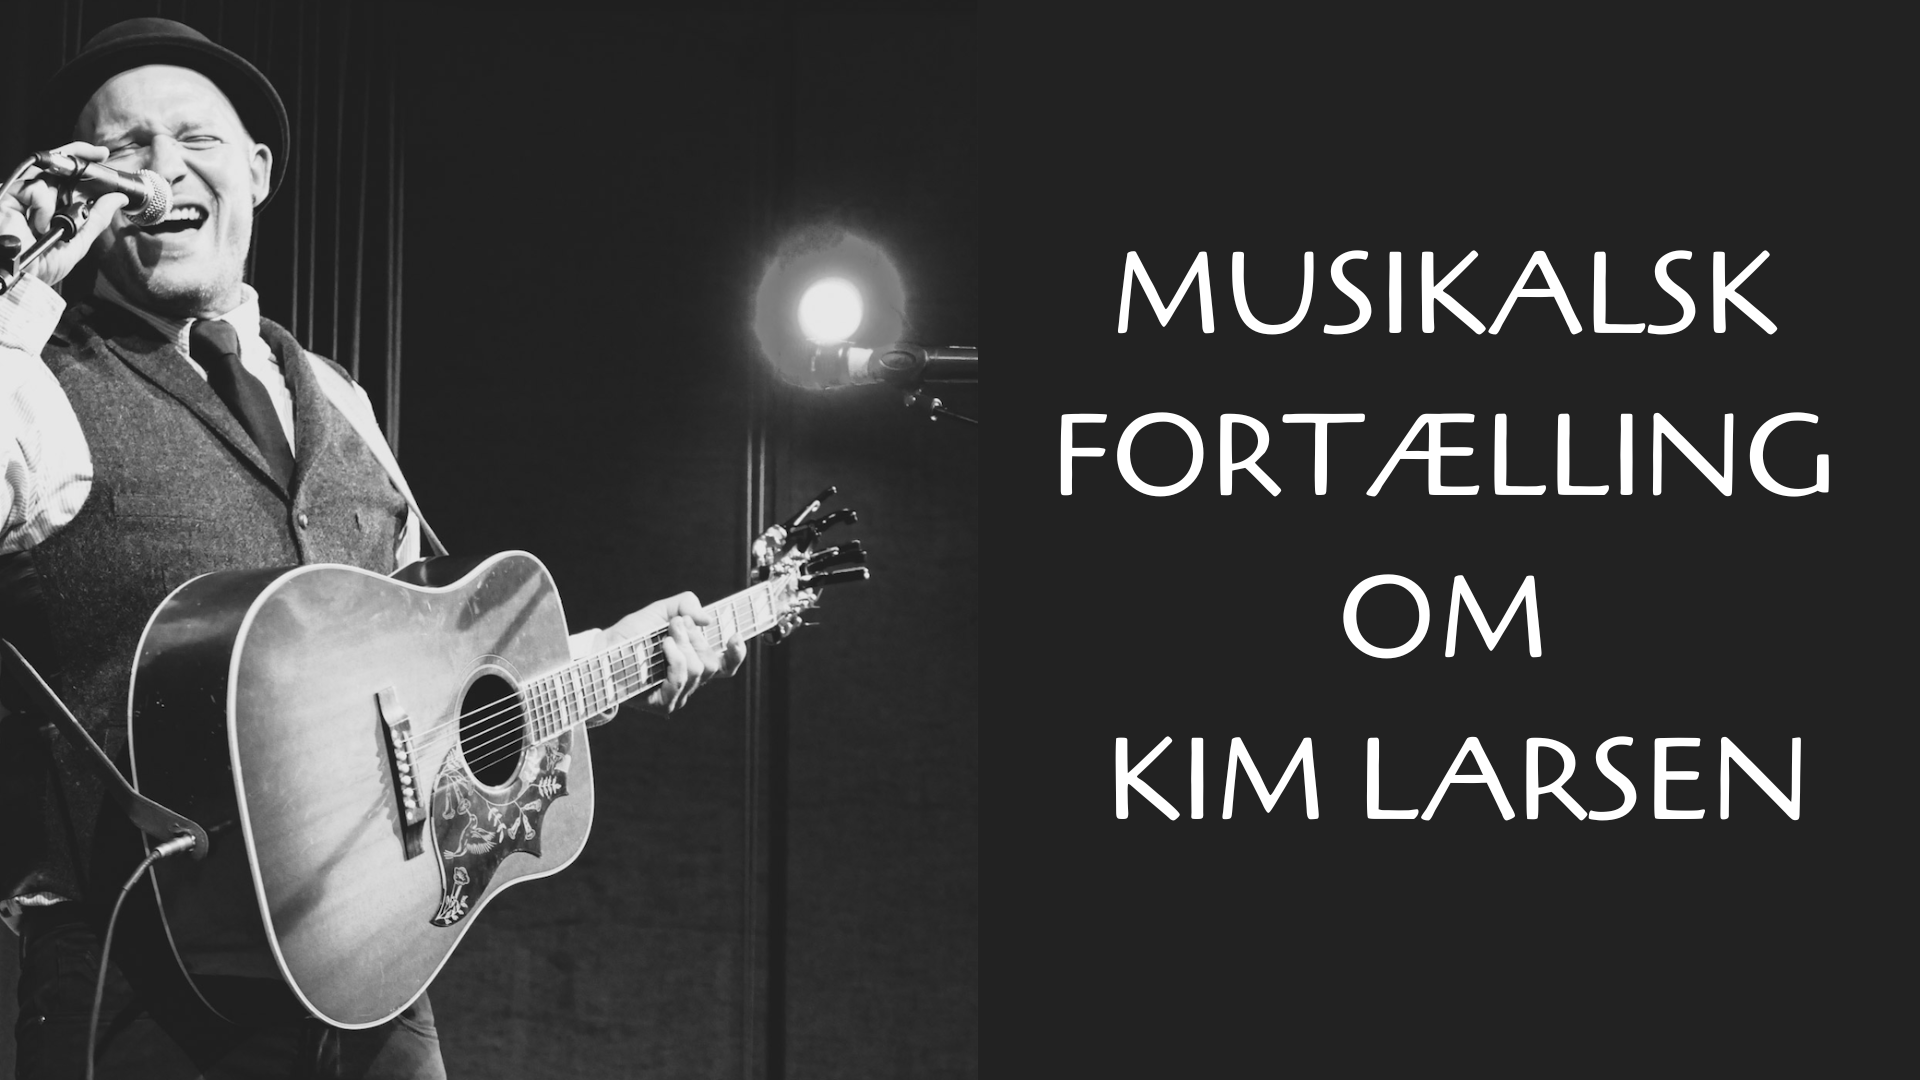 Musikalsk fortælling om Kim Larsen